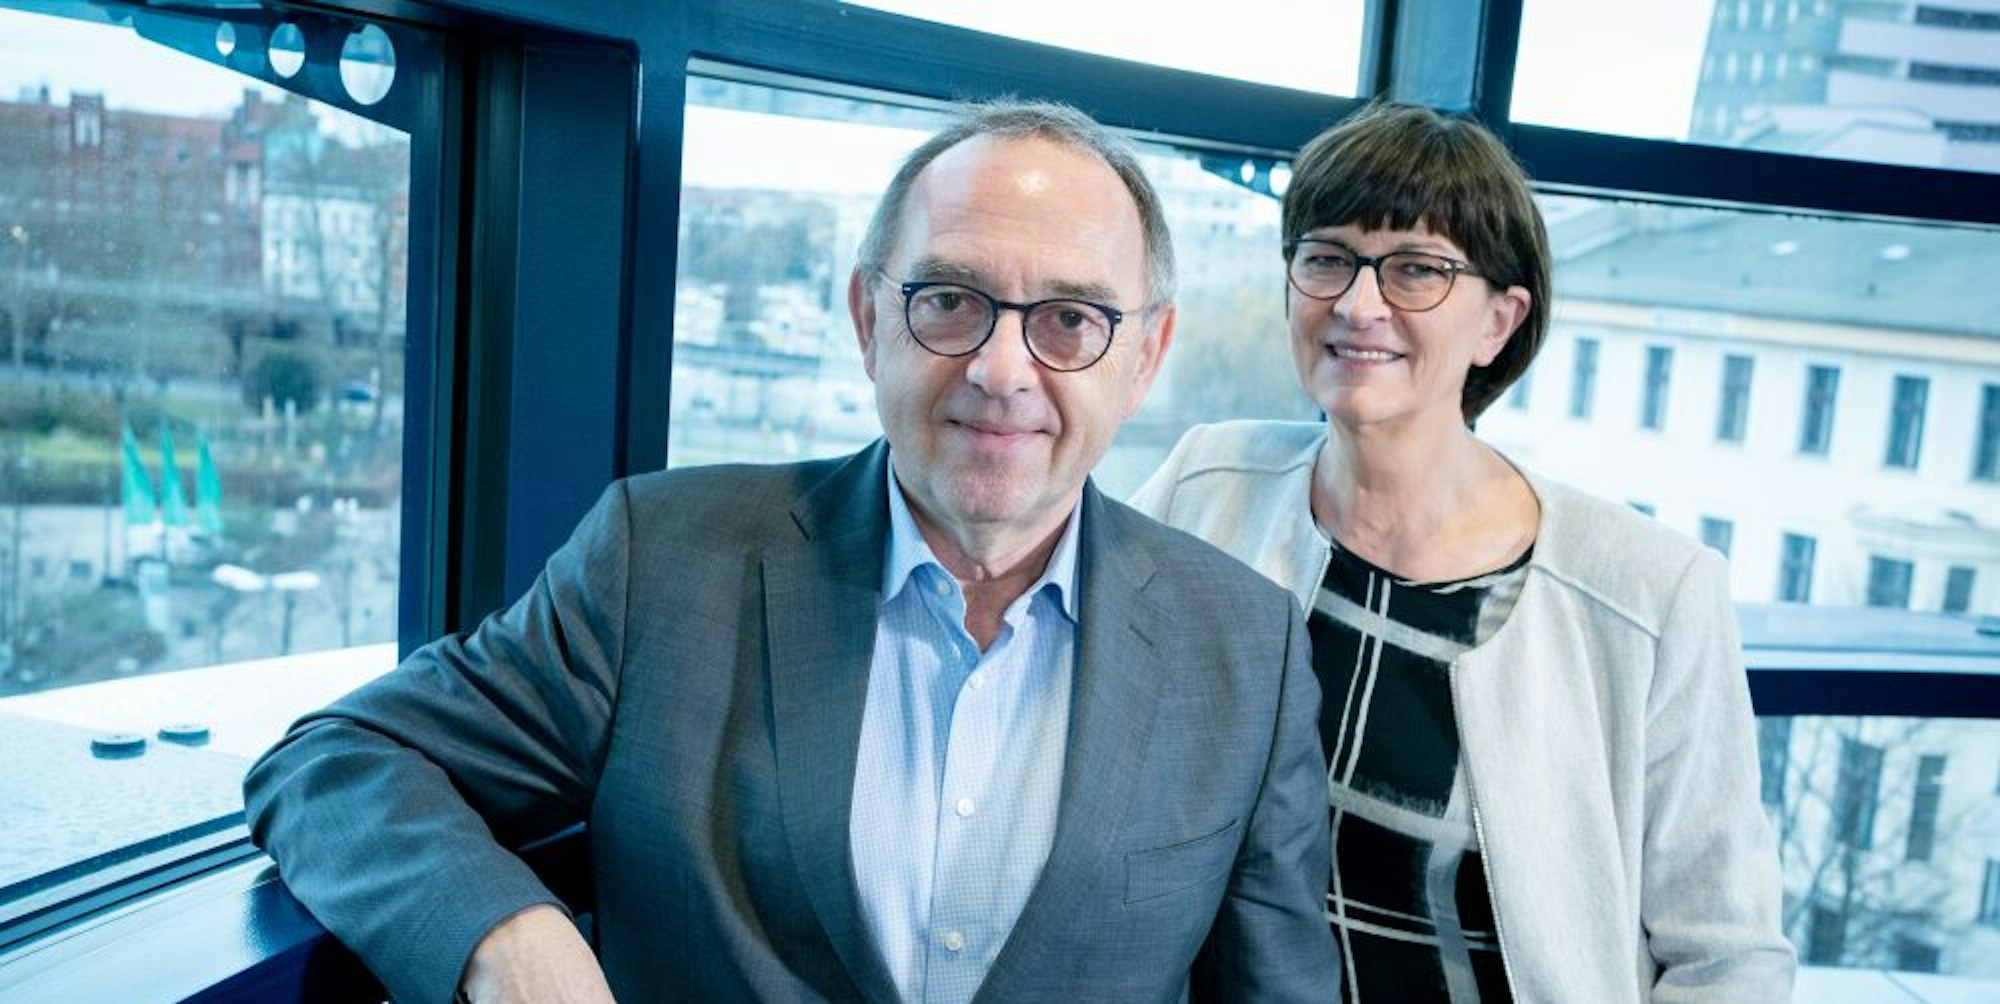 Leiten die SPD seit nunmehr einem Jahr: Saskia Esken und Norbert Walter-Borjans